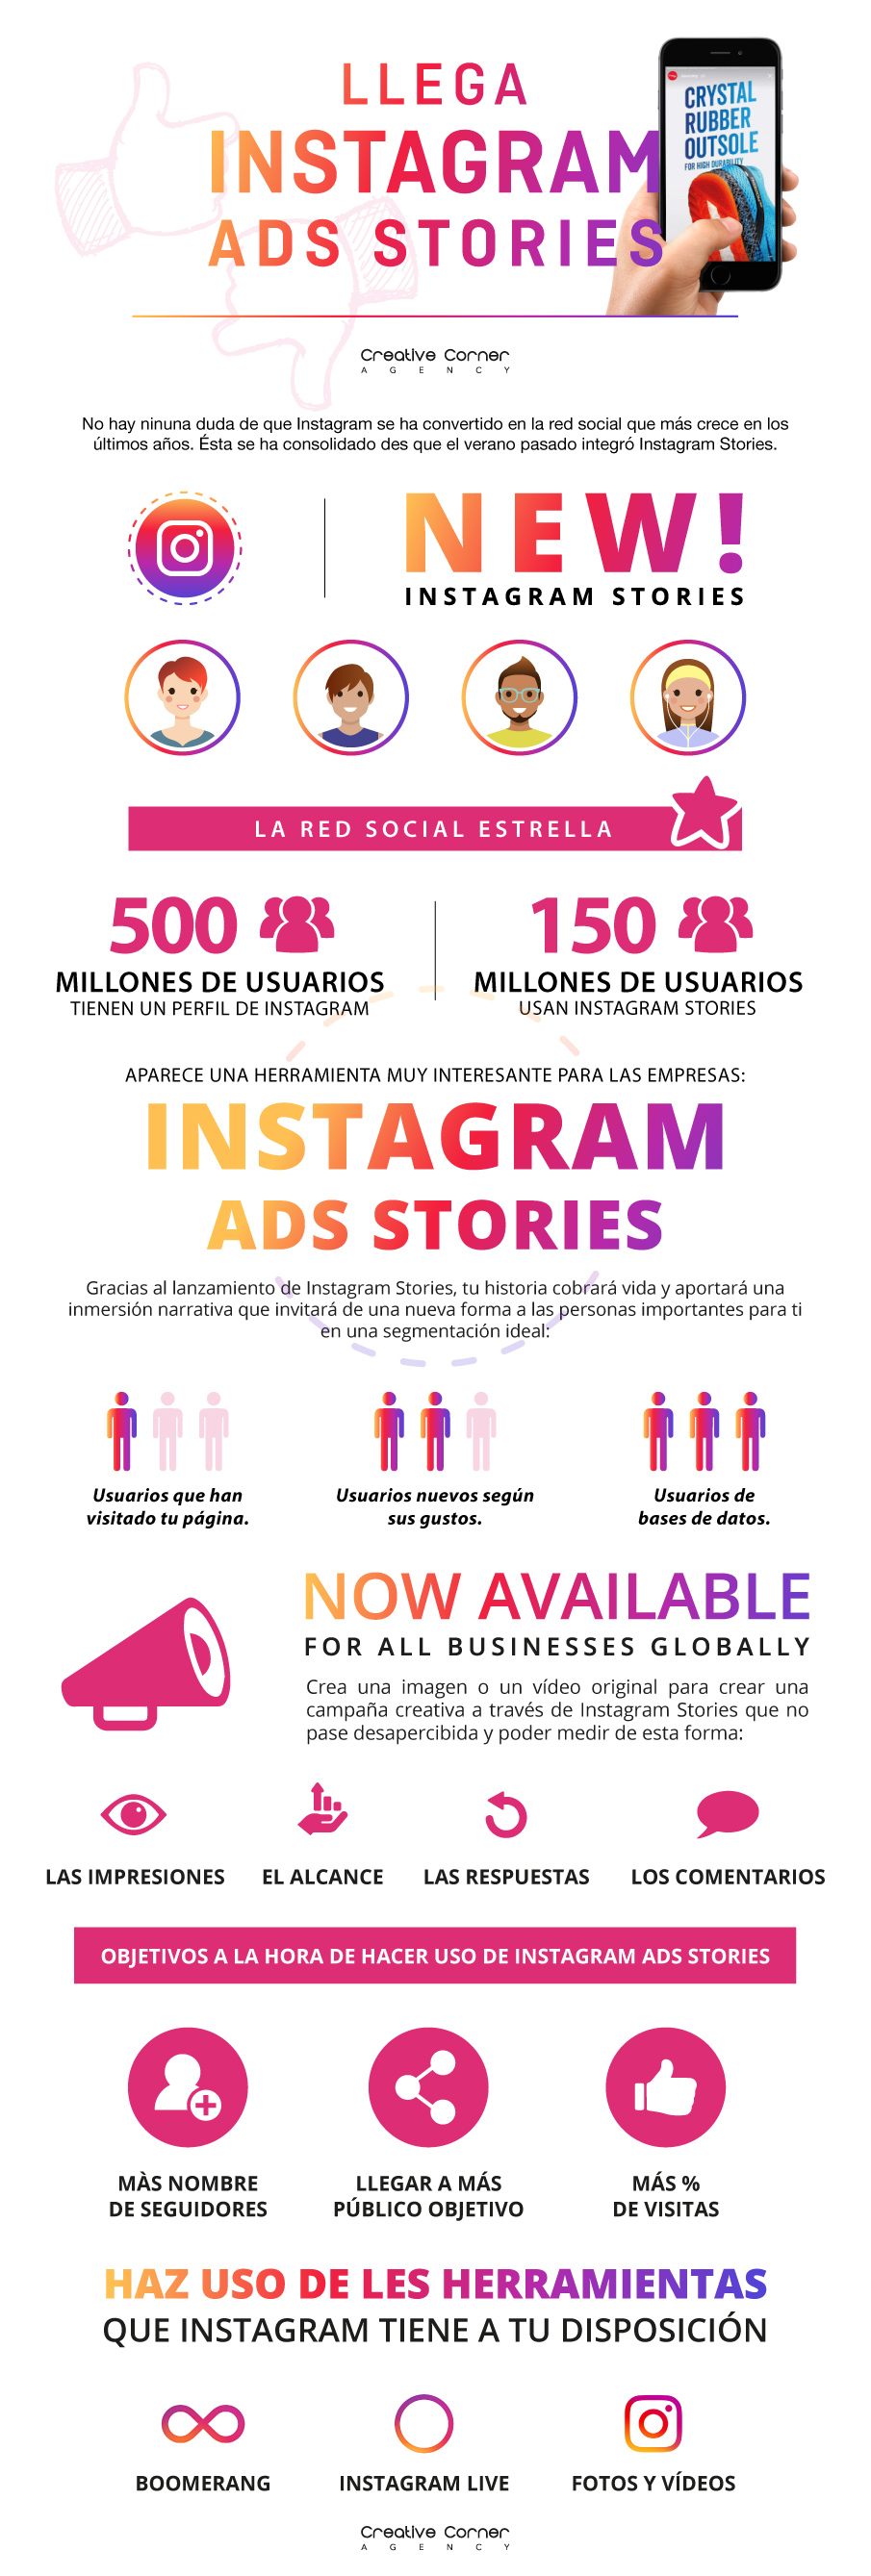 Instagram ads stories